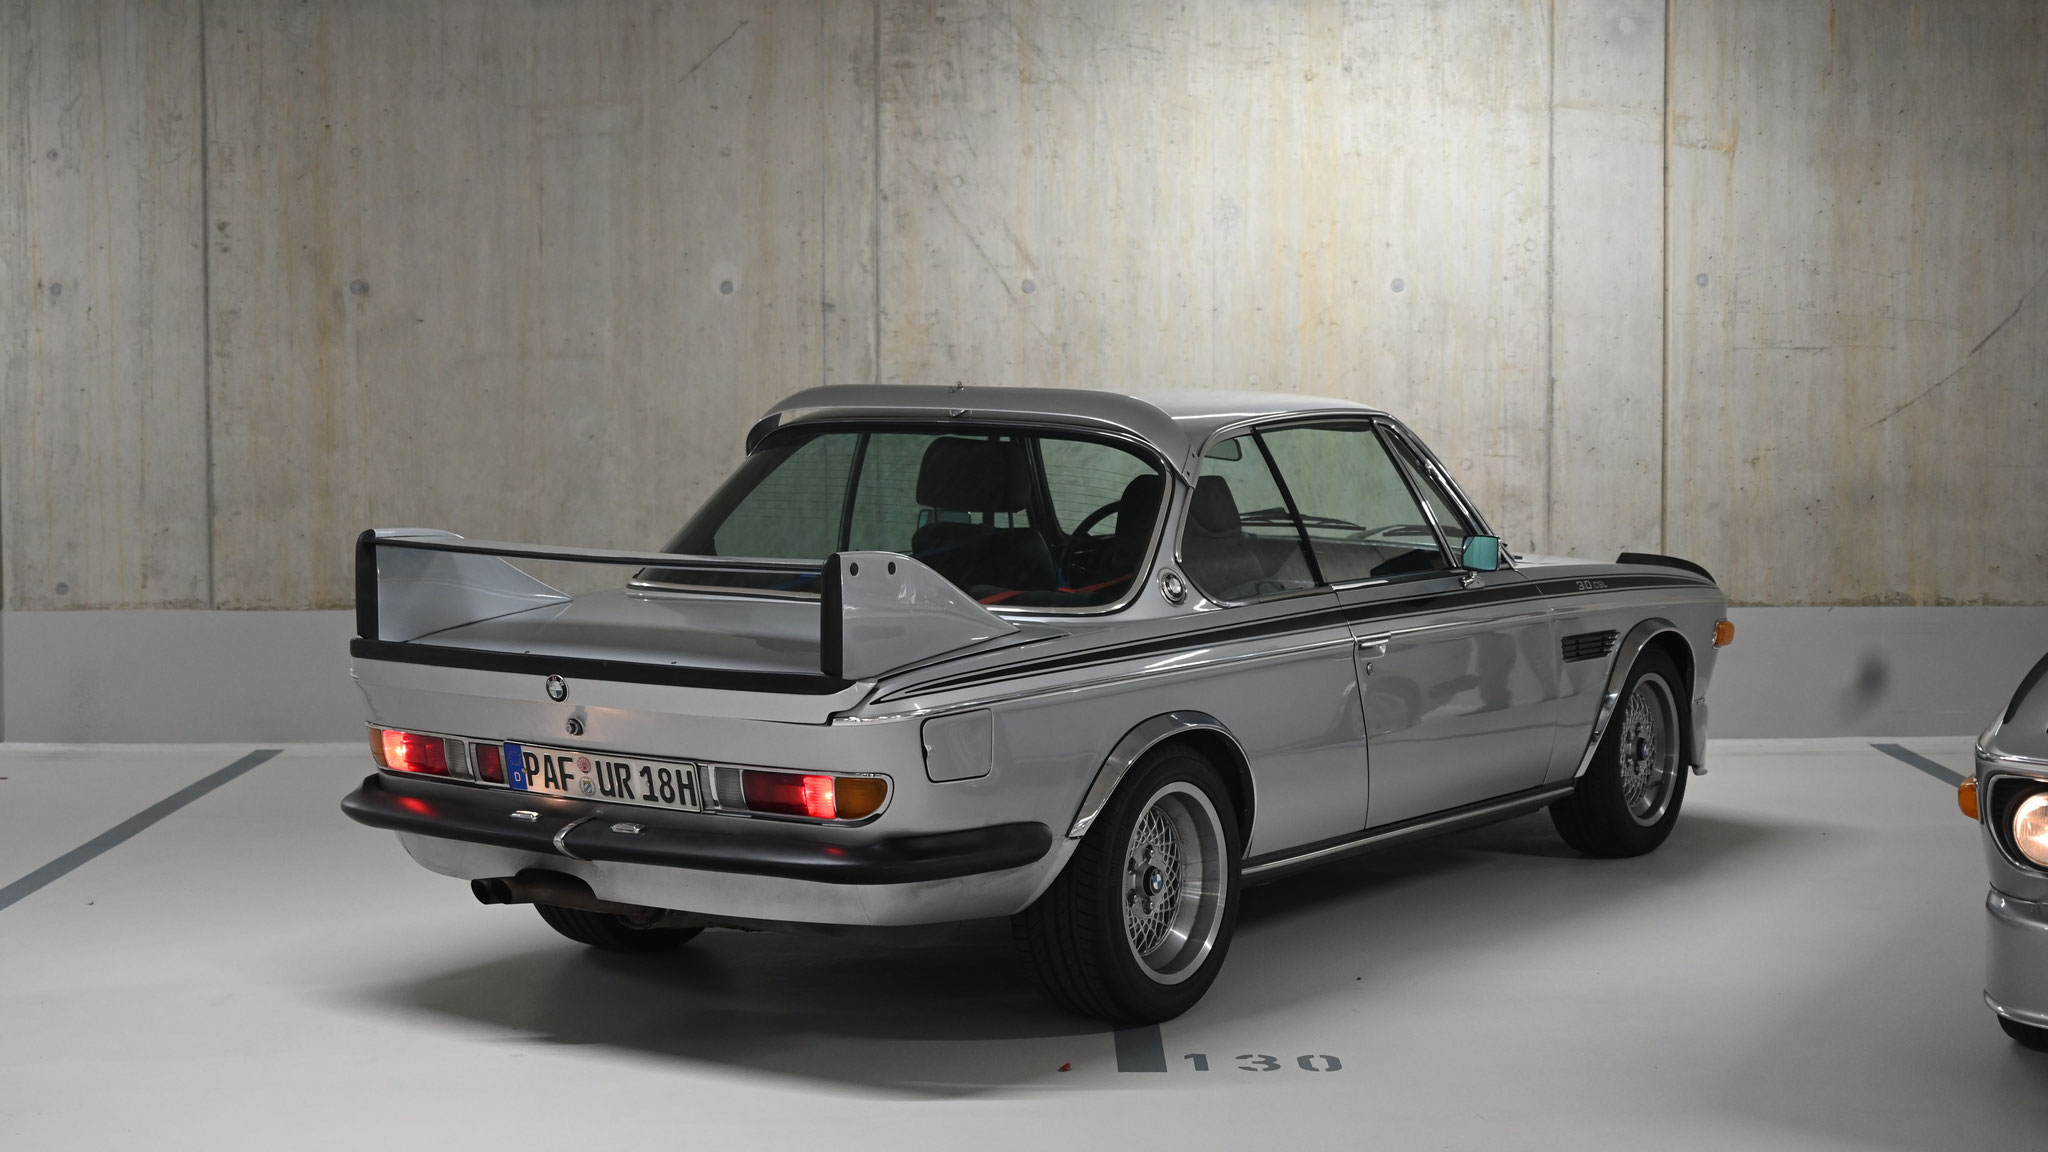 BMW 3.0 CLS - PAF-UR18H